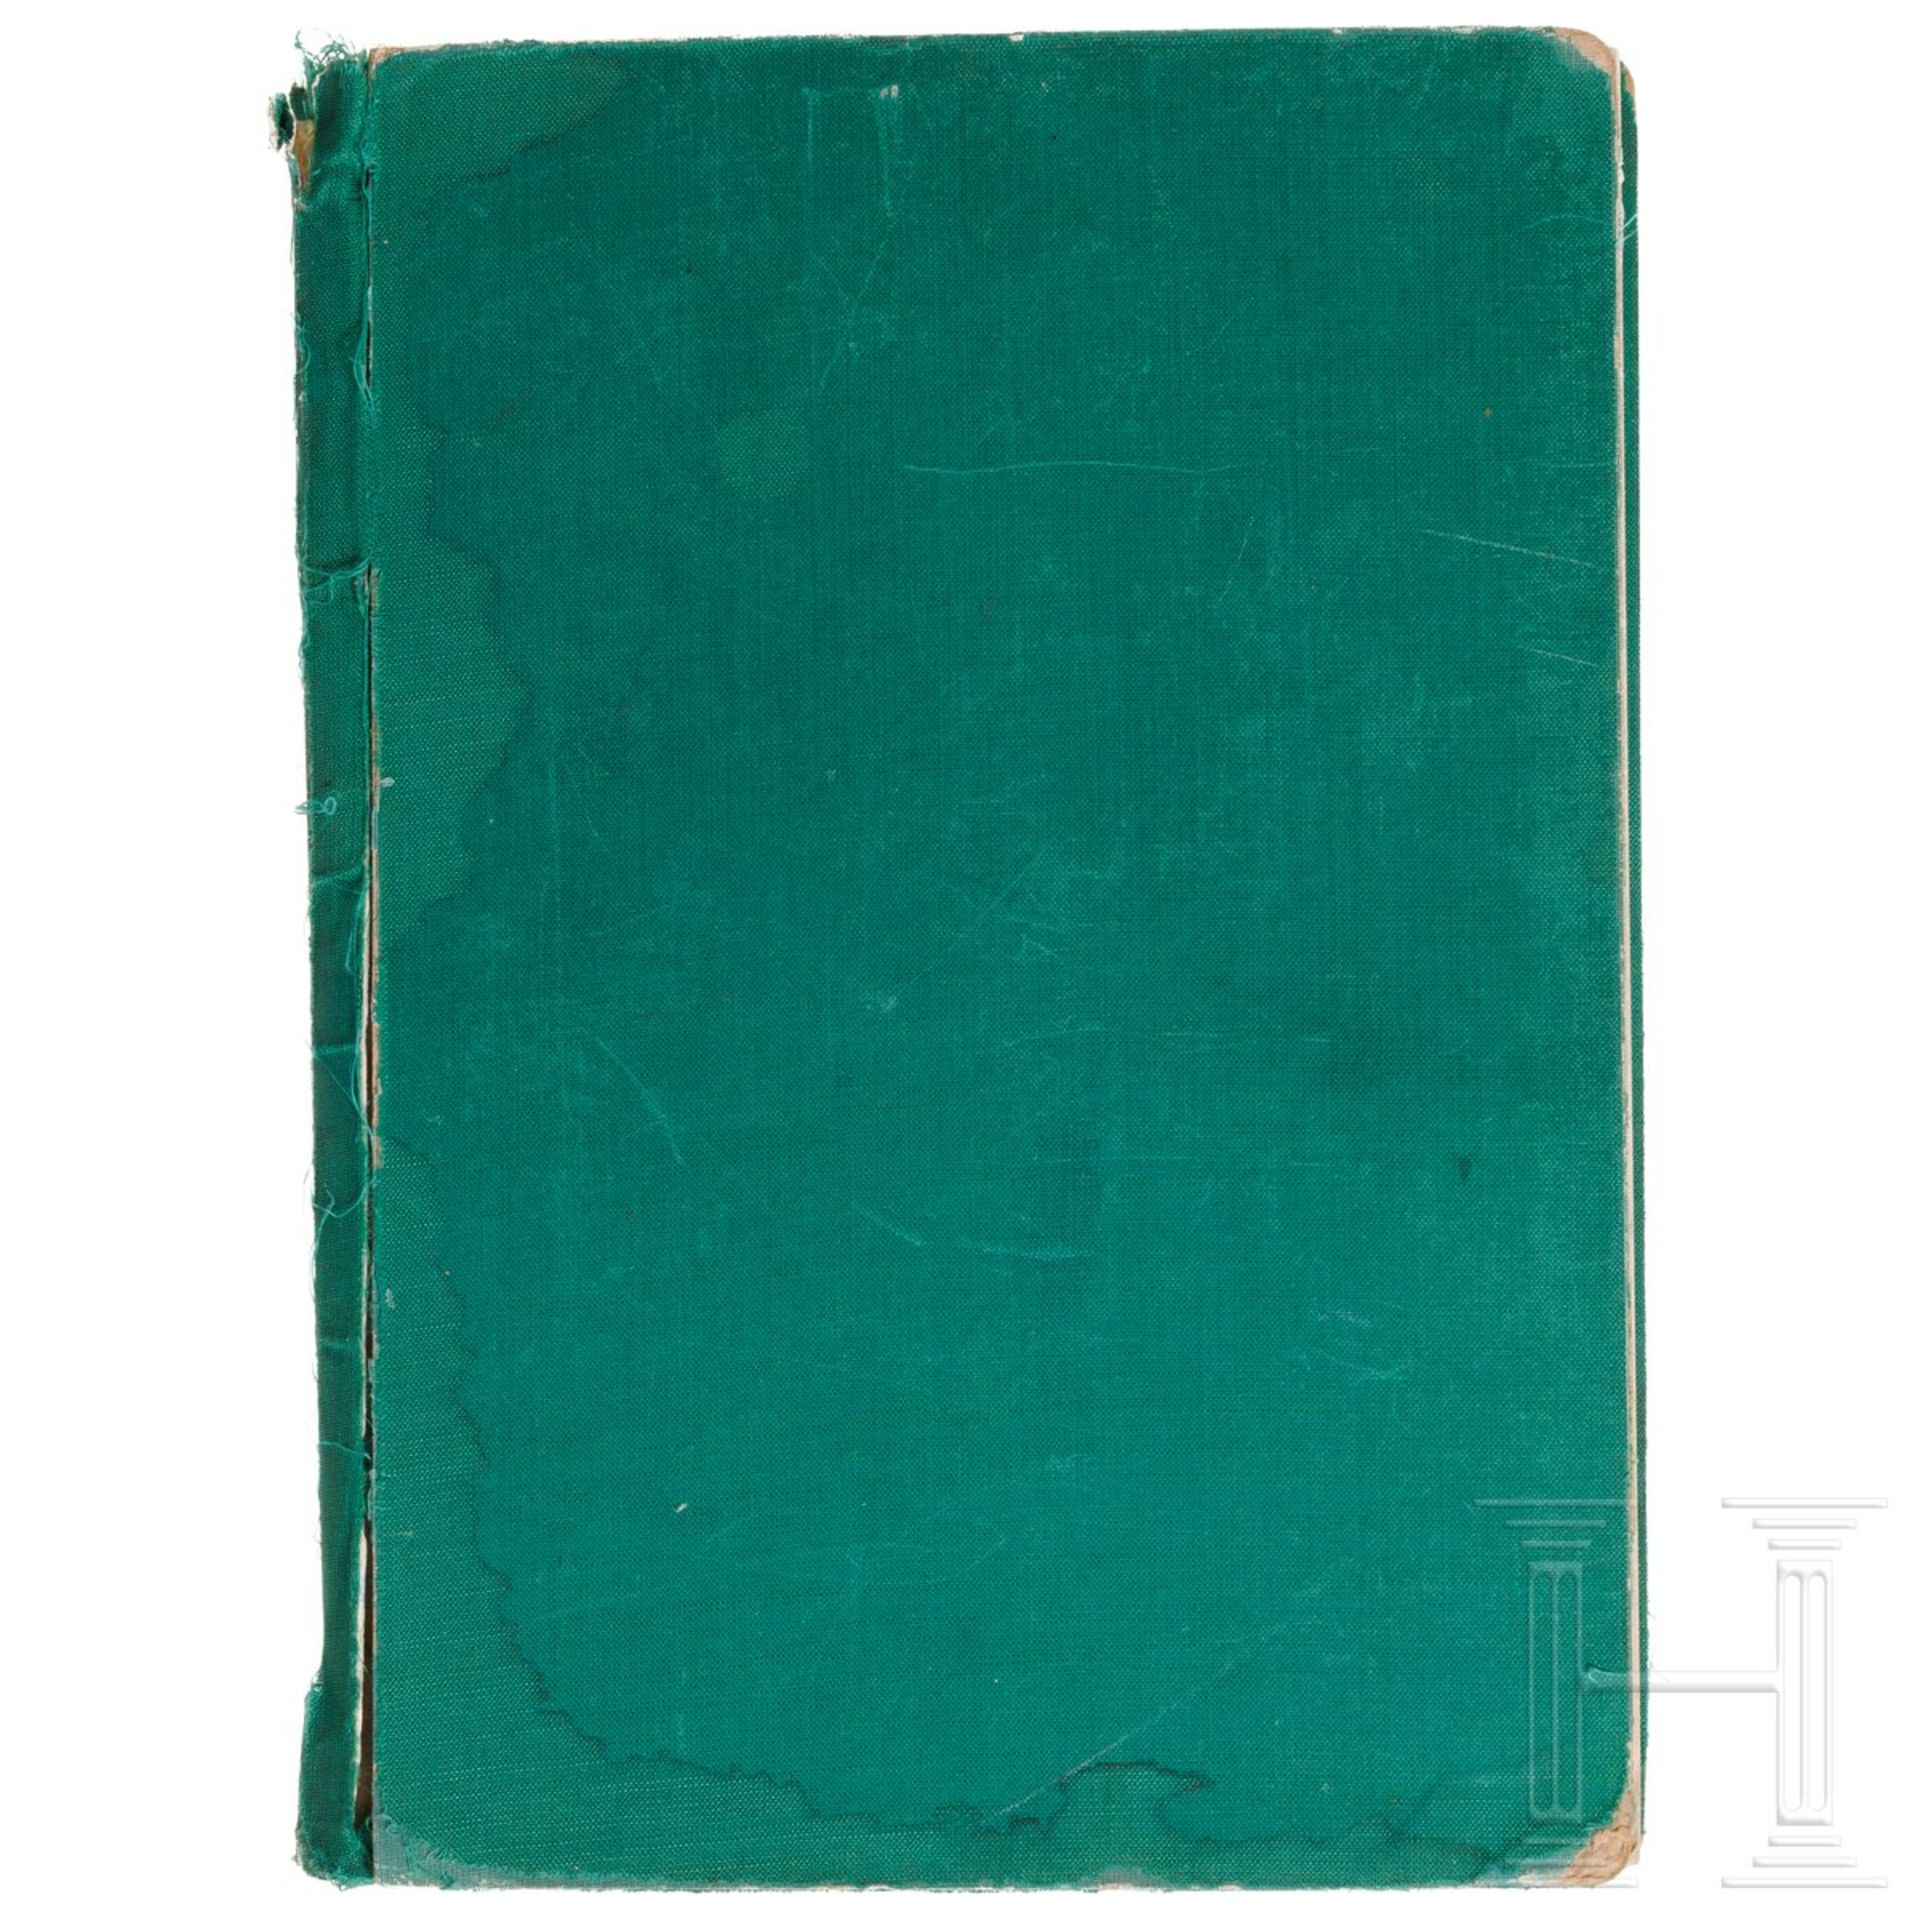 "Aviso 'Grille' - Pumpenbuch", Blohm & Voß, 14. Ausfertigung 1940 - Image 5 of 5